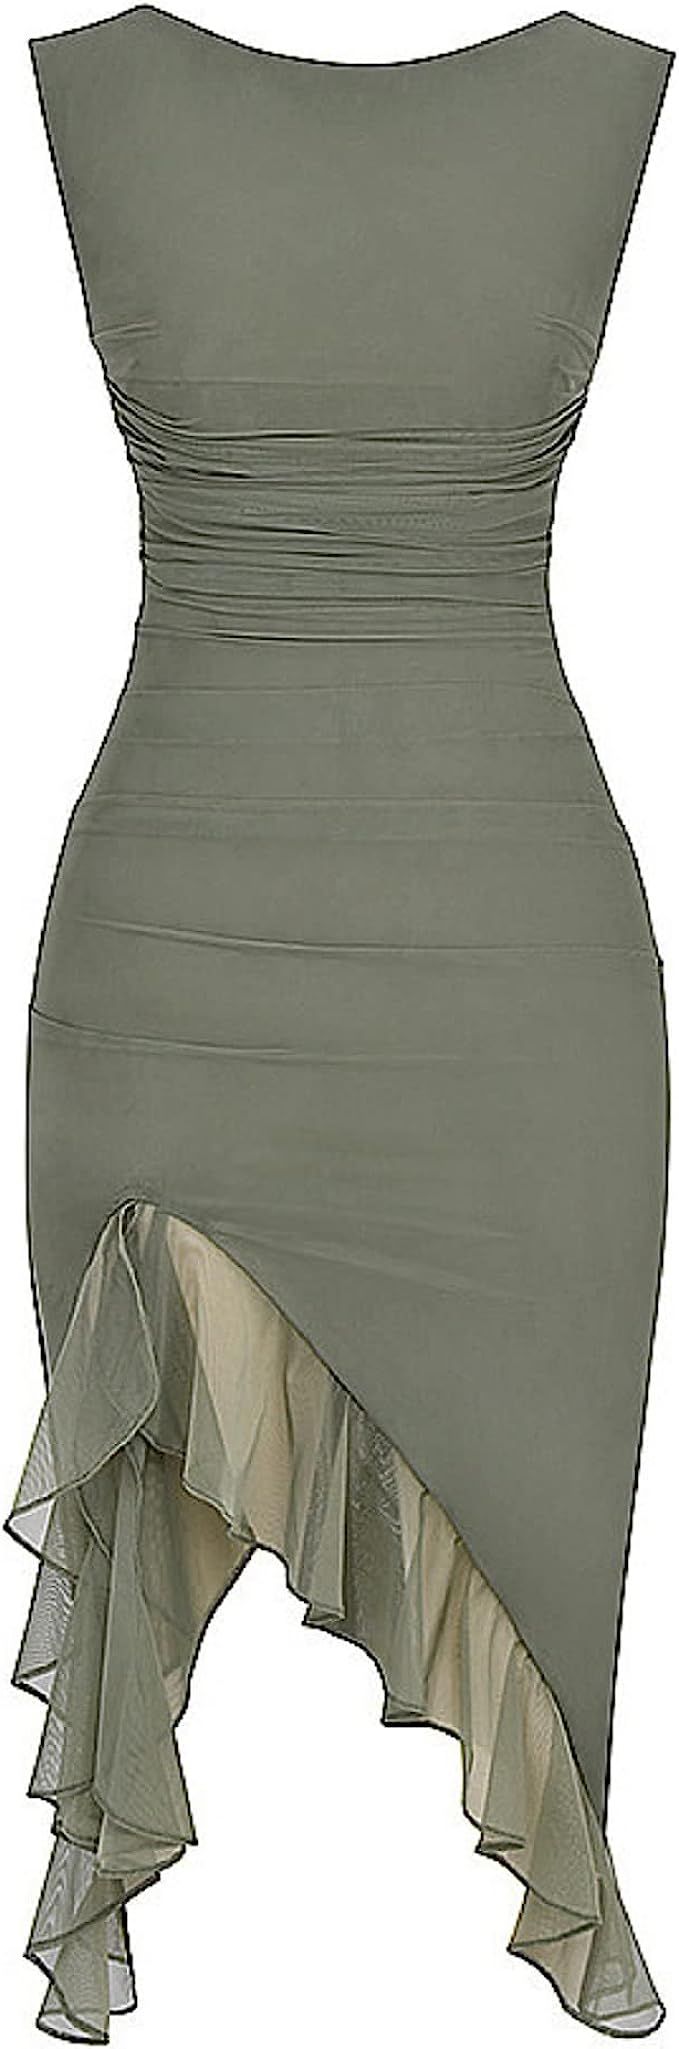 Women Ruffle Ruched Mini Dress Sleeveless Lace Up Short Dresses Irregular Hem Smocked Dress Y2K N... | Amazon (US)